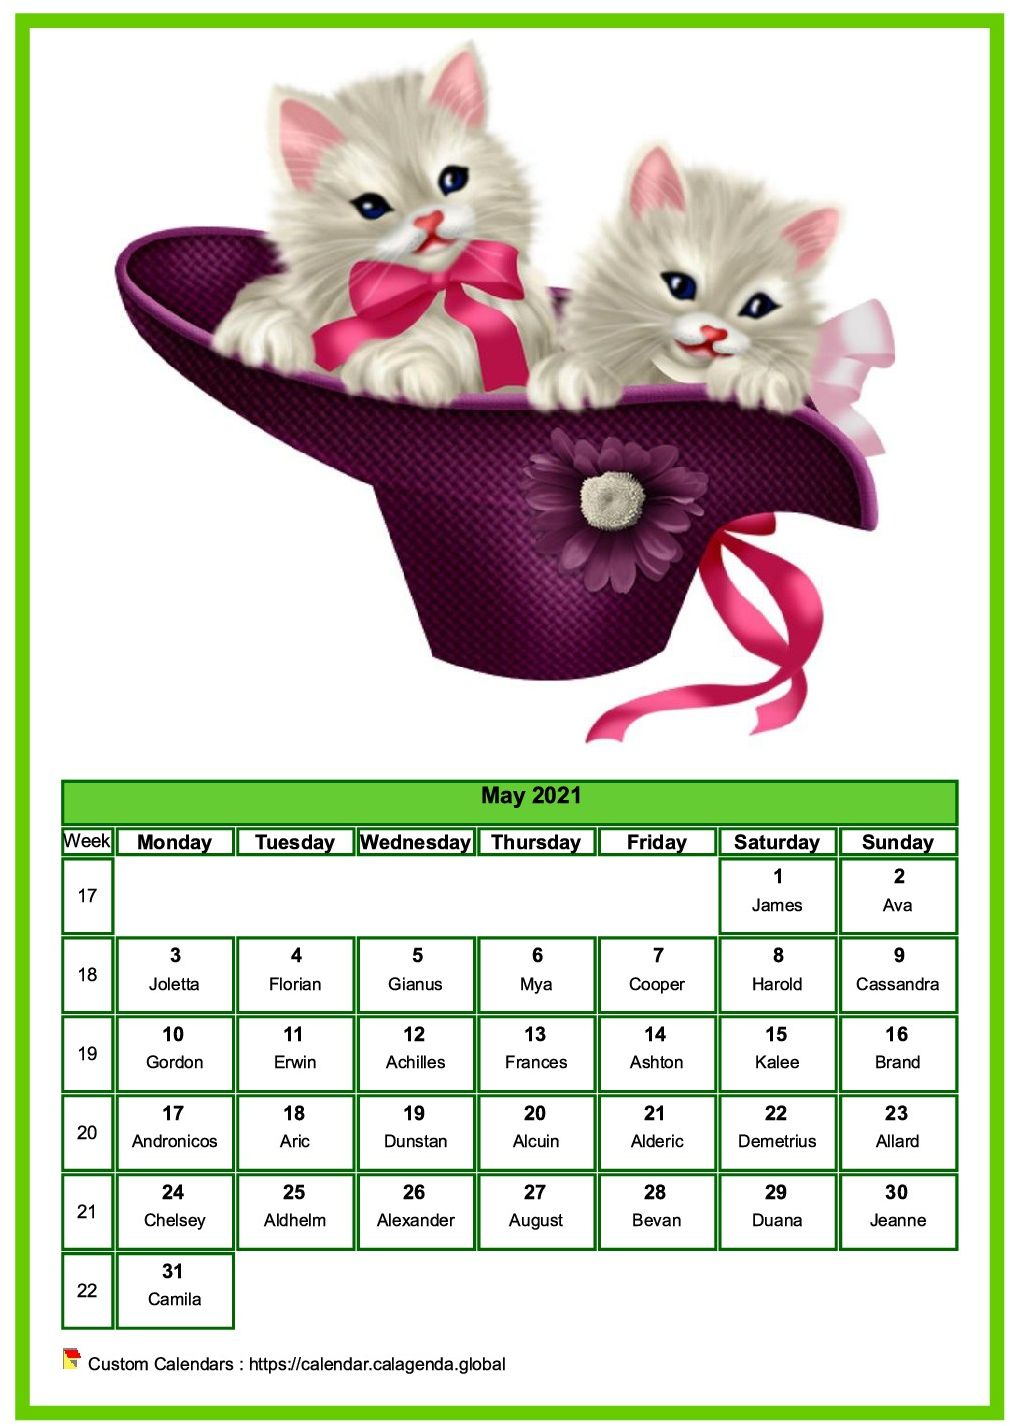 Calendar May 2021 cats